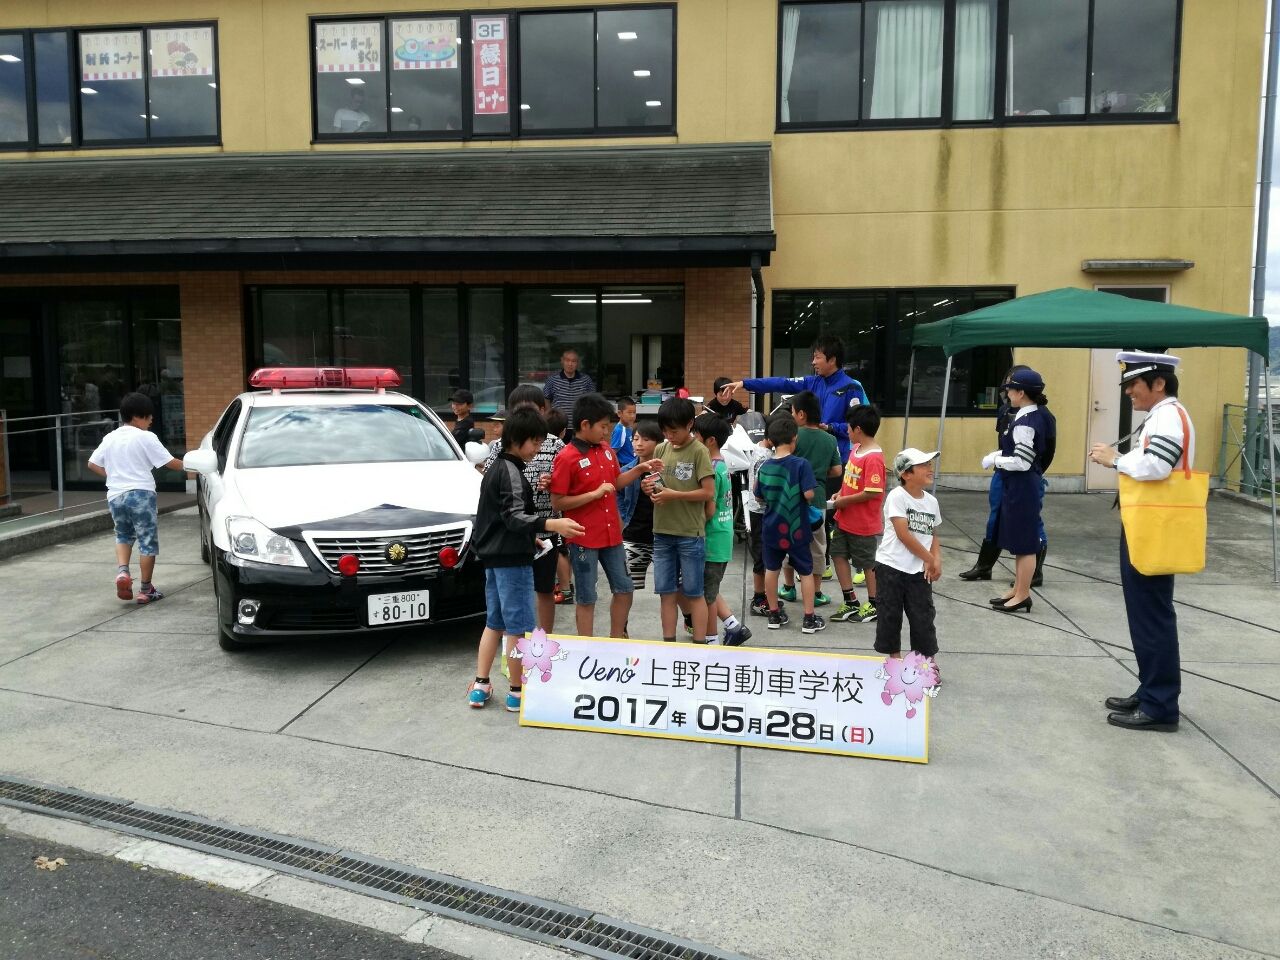 課外活動 上野自動車学校二輪試乗車会 Fc アヴェニーダソル スタッフブログ